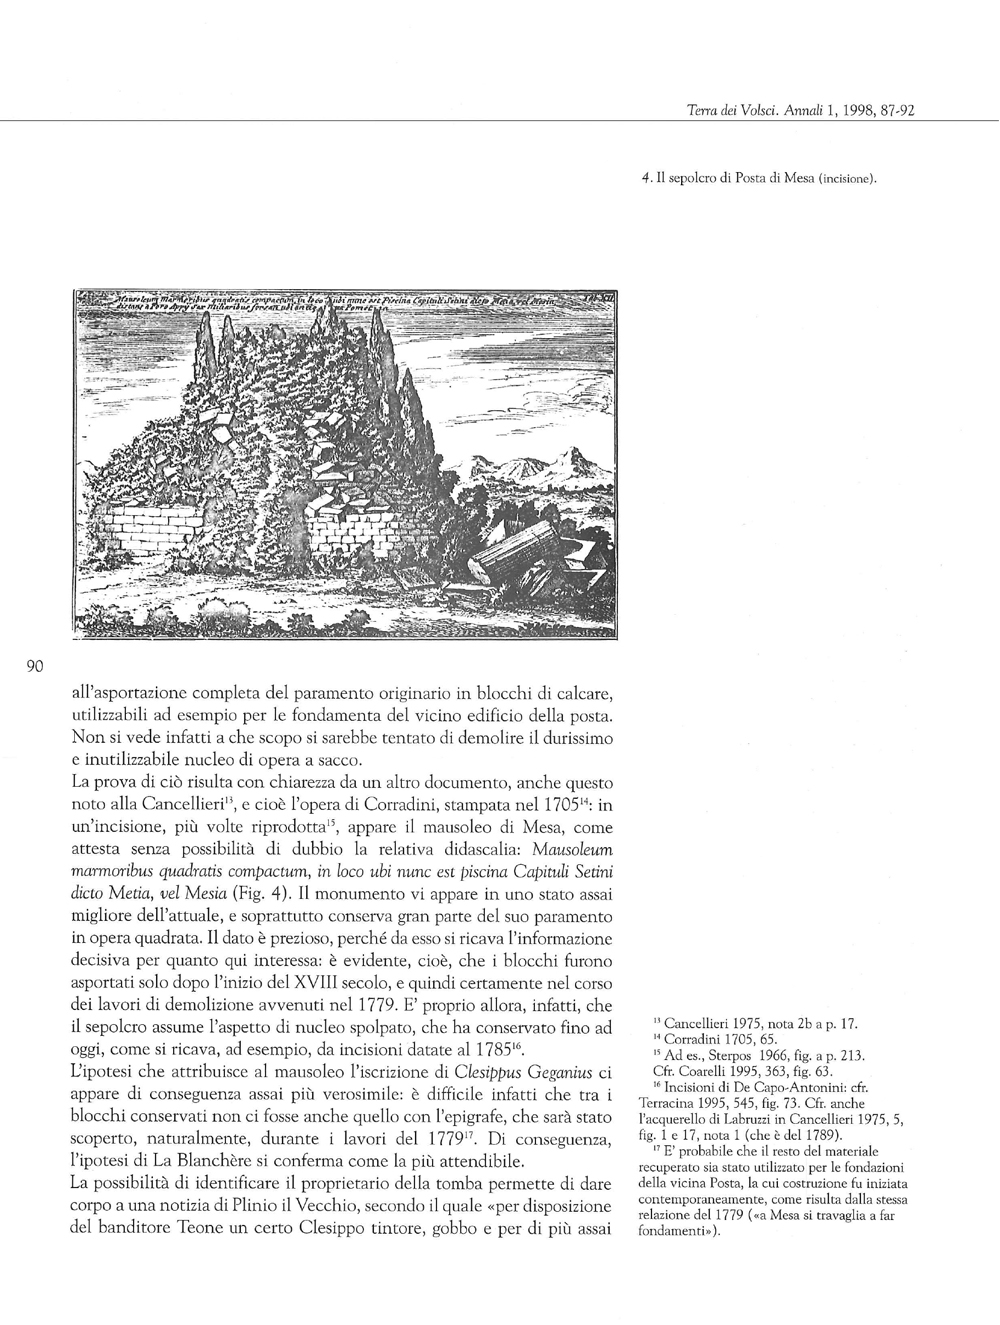 Terra dei Volsci. Annali del Museo Archeologico di Frosinone, 1998, 1, Filippo Coarelli